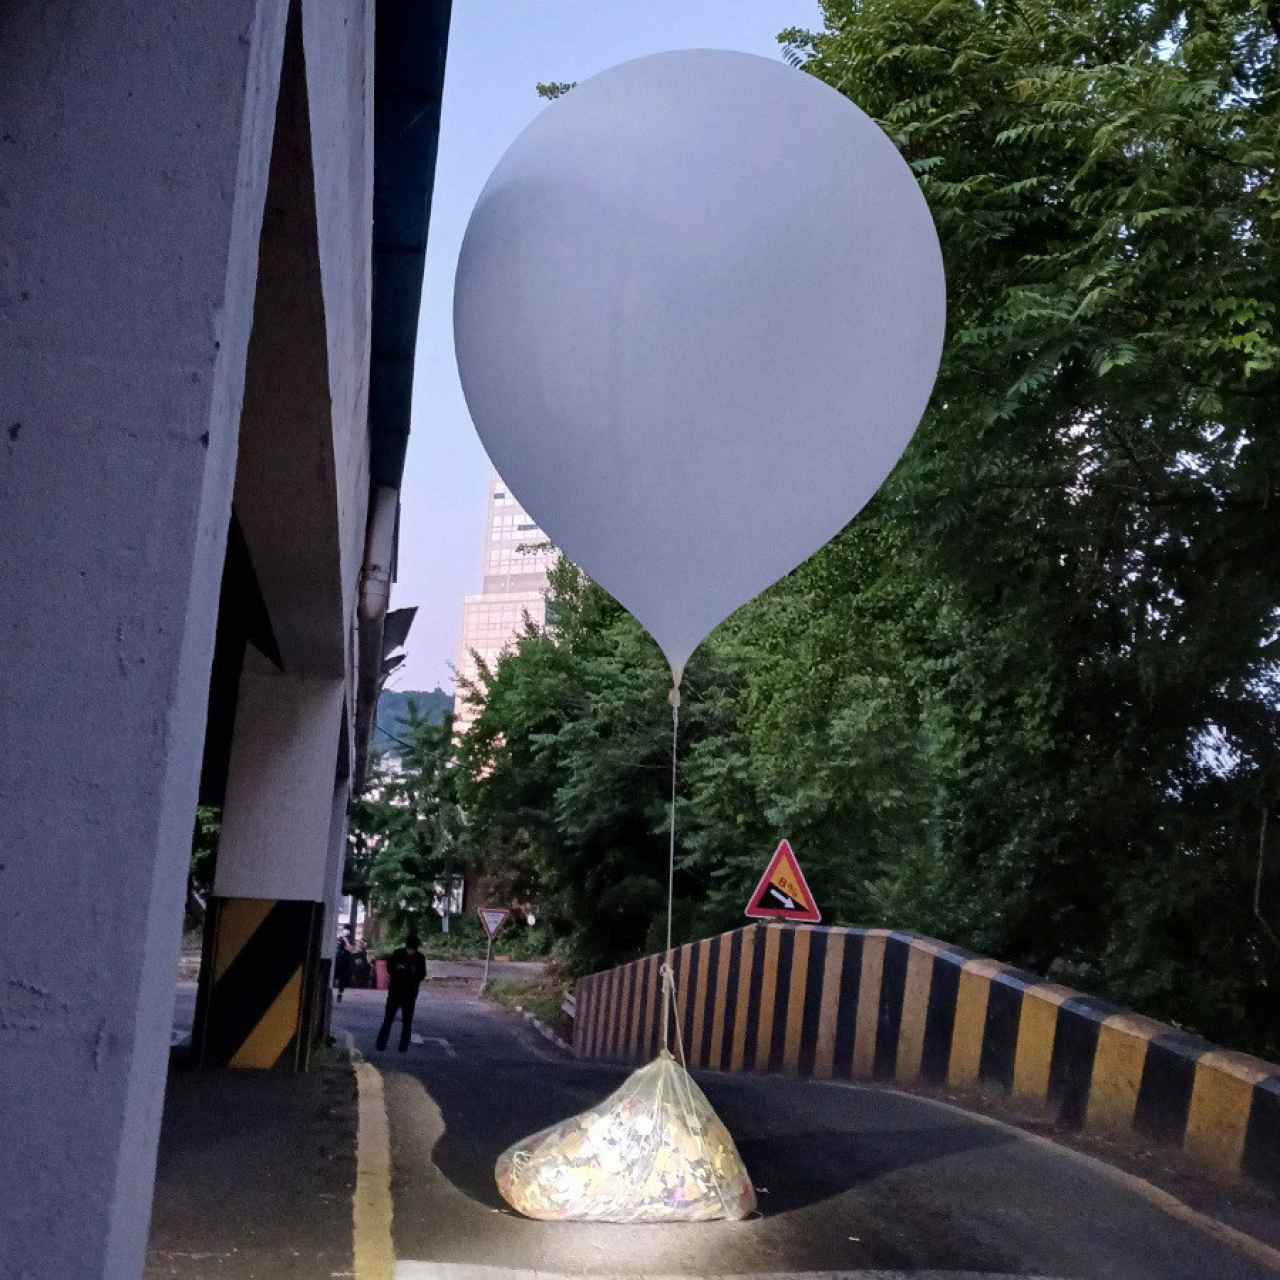 Uno de los globos enviados por Corea del Norte hallado en Incheon.